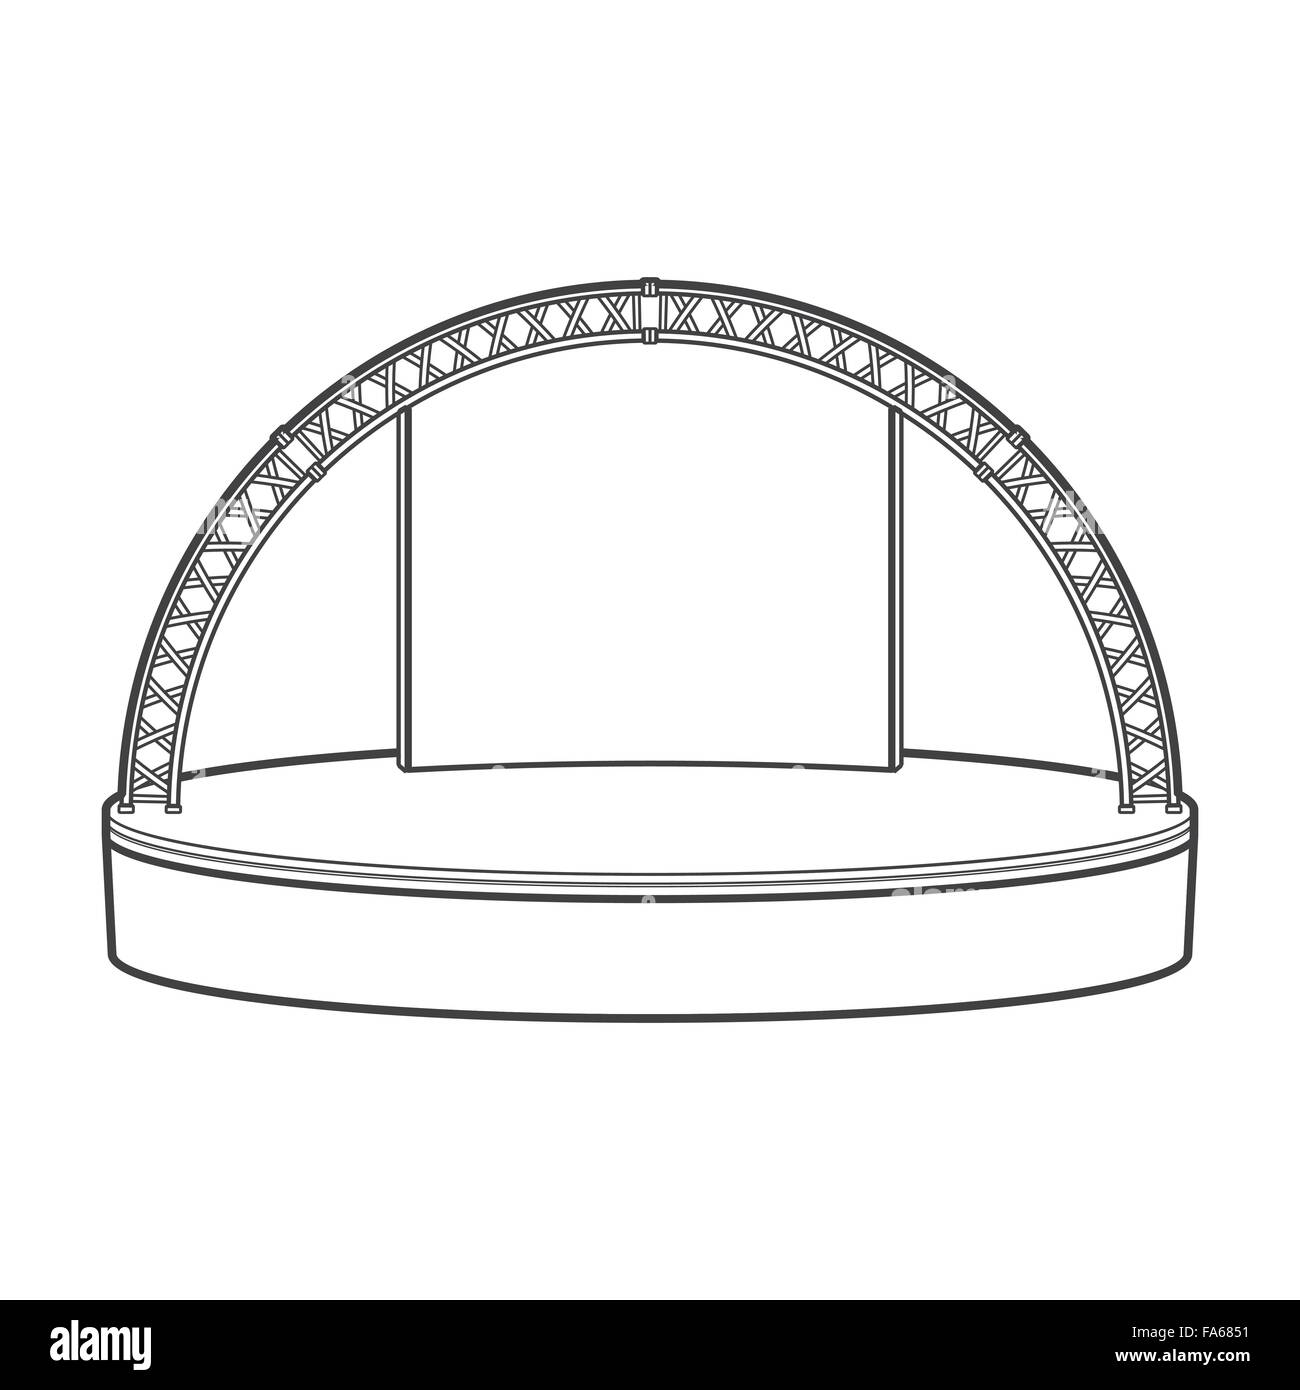 monochrome Kontur leer Estrade gerundet Bühne Metall Dachstuhl isoliert schwarzen Umriss Vektorgrafik auf weißem Hintergrund Stock Vektor